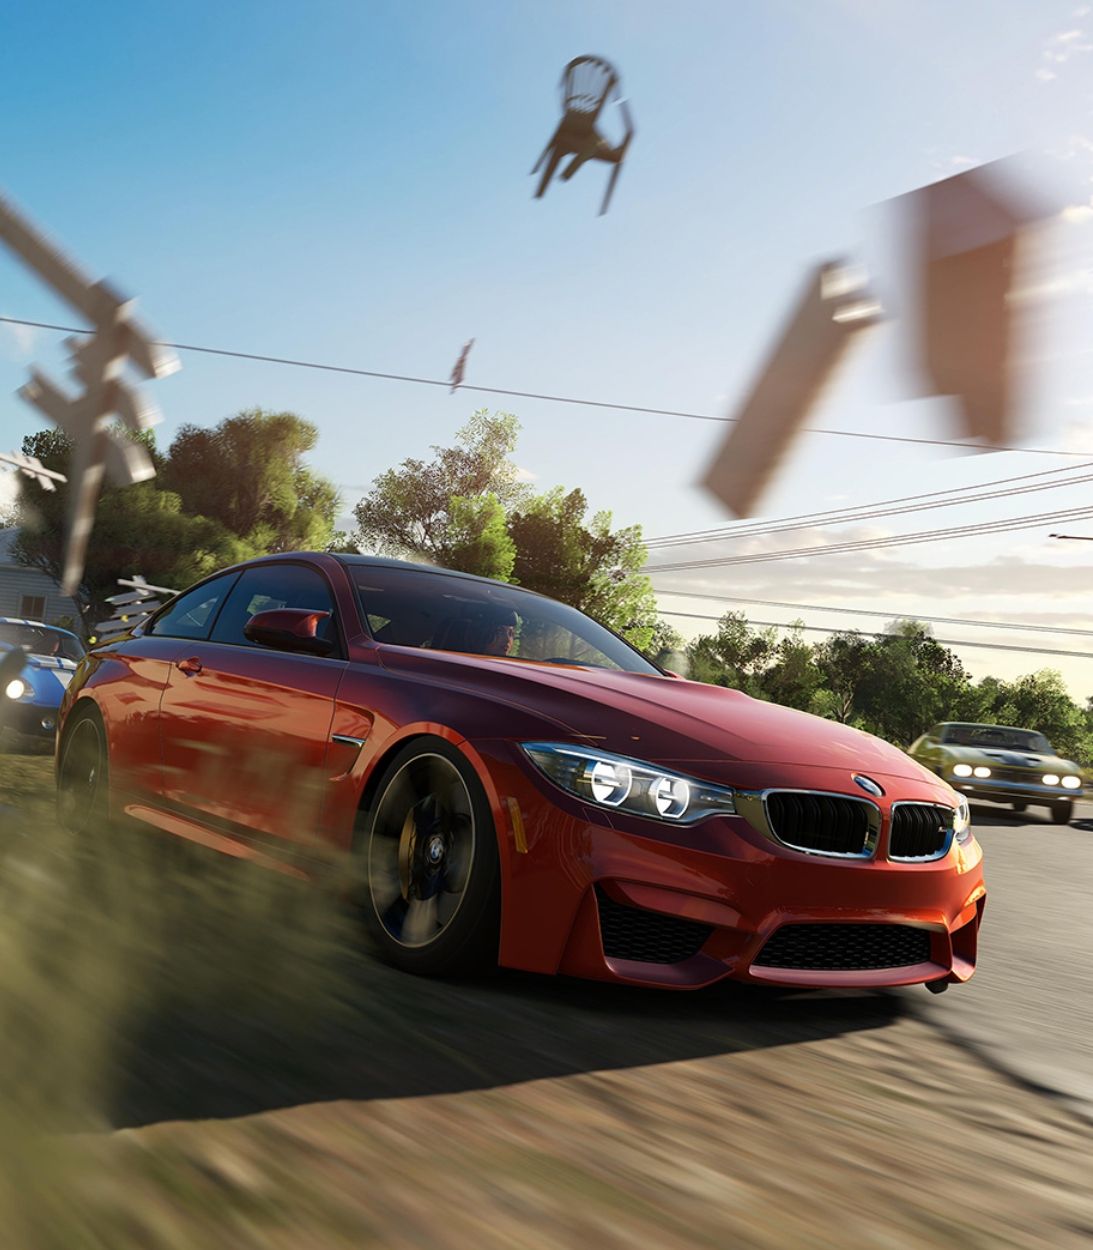 Vertical Car Crashing Through Debris in Forza Horizon 3